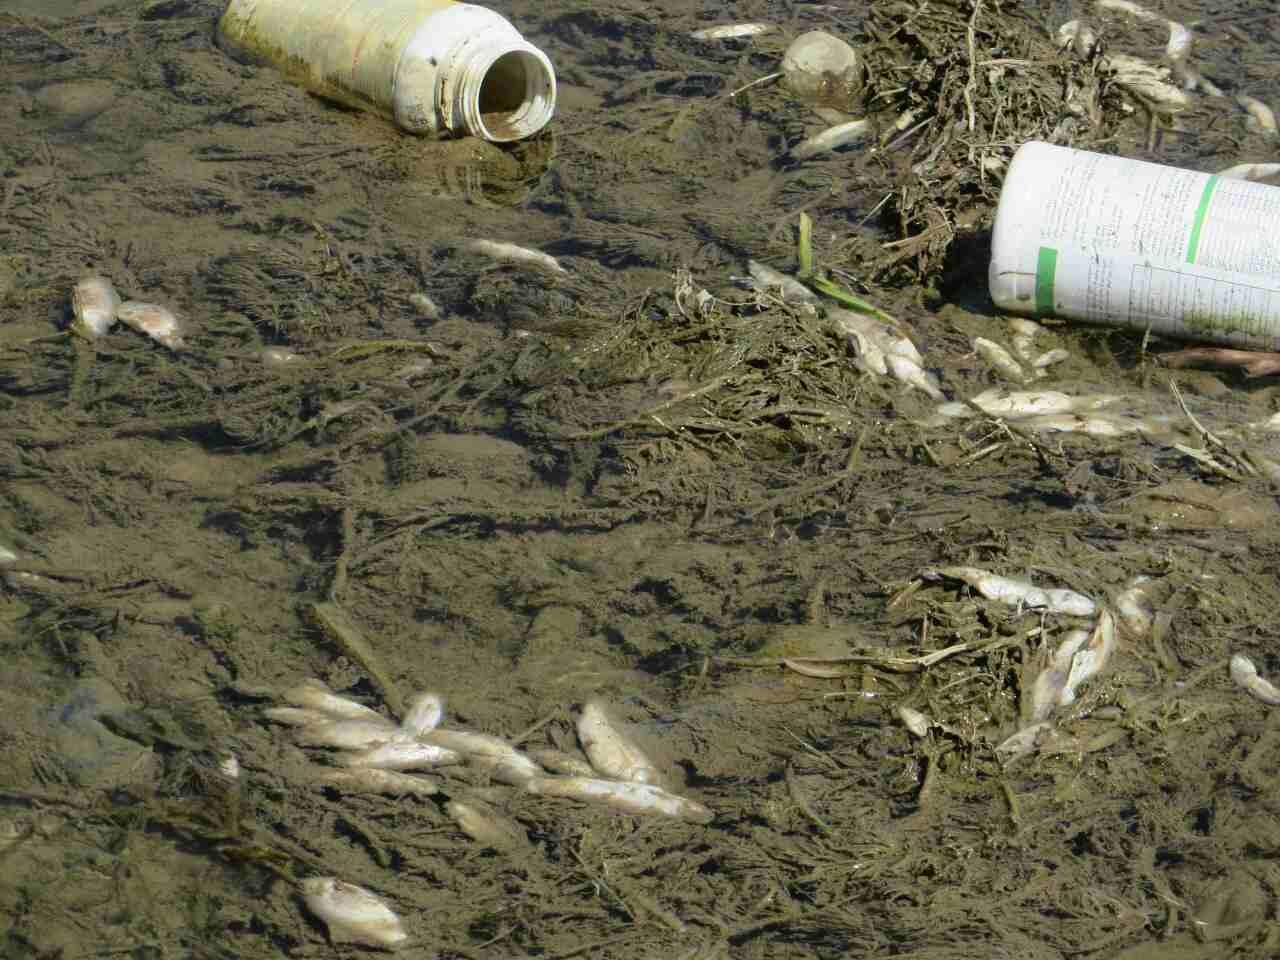 ۴۱۲ مزرعه پرورش ماهی در لرستان خسارت دید و سیل ۷ هزارتن ماهی را با خود برد.